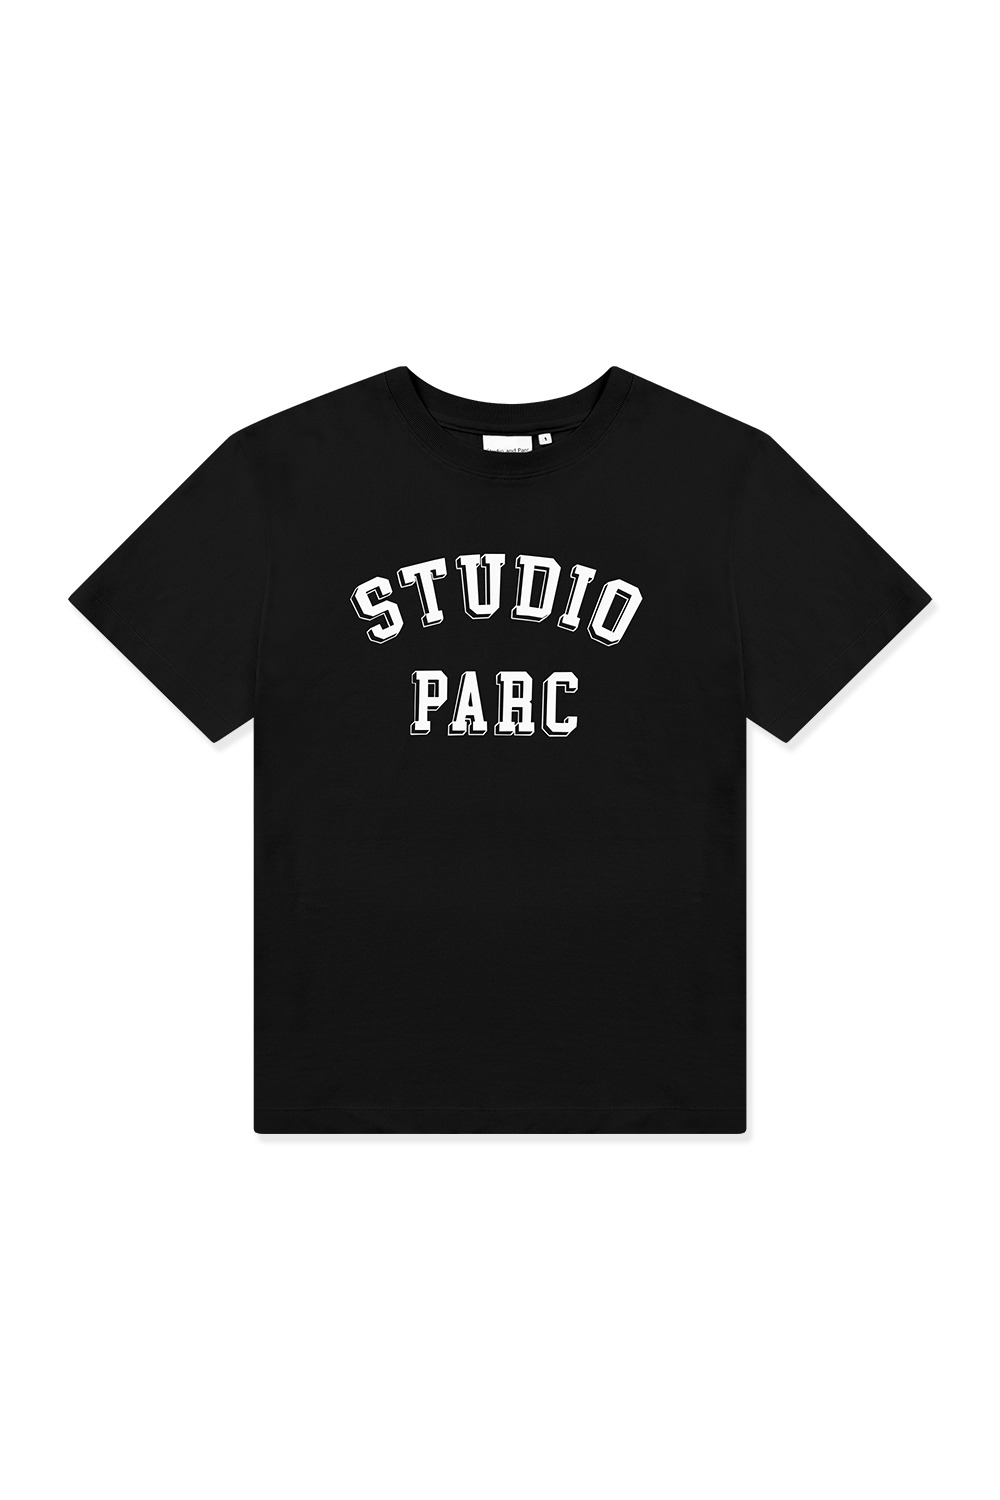 스튜디오파르크 티셔츠 (블랙) - 리치즈 RICHEZ